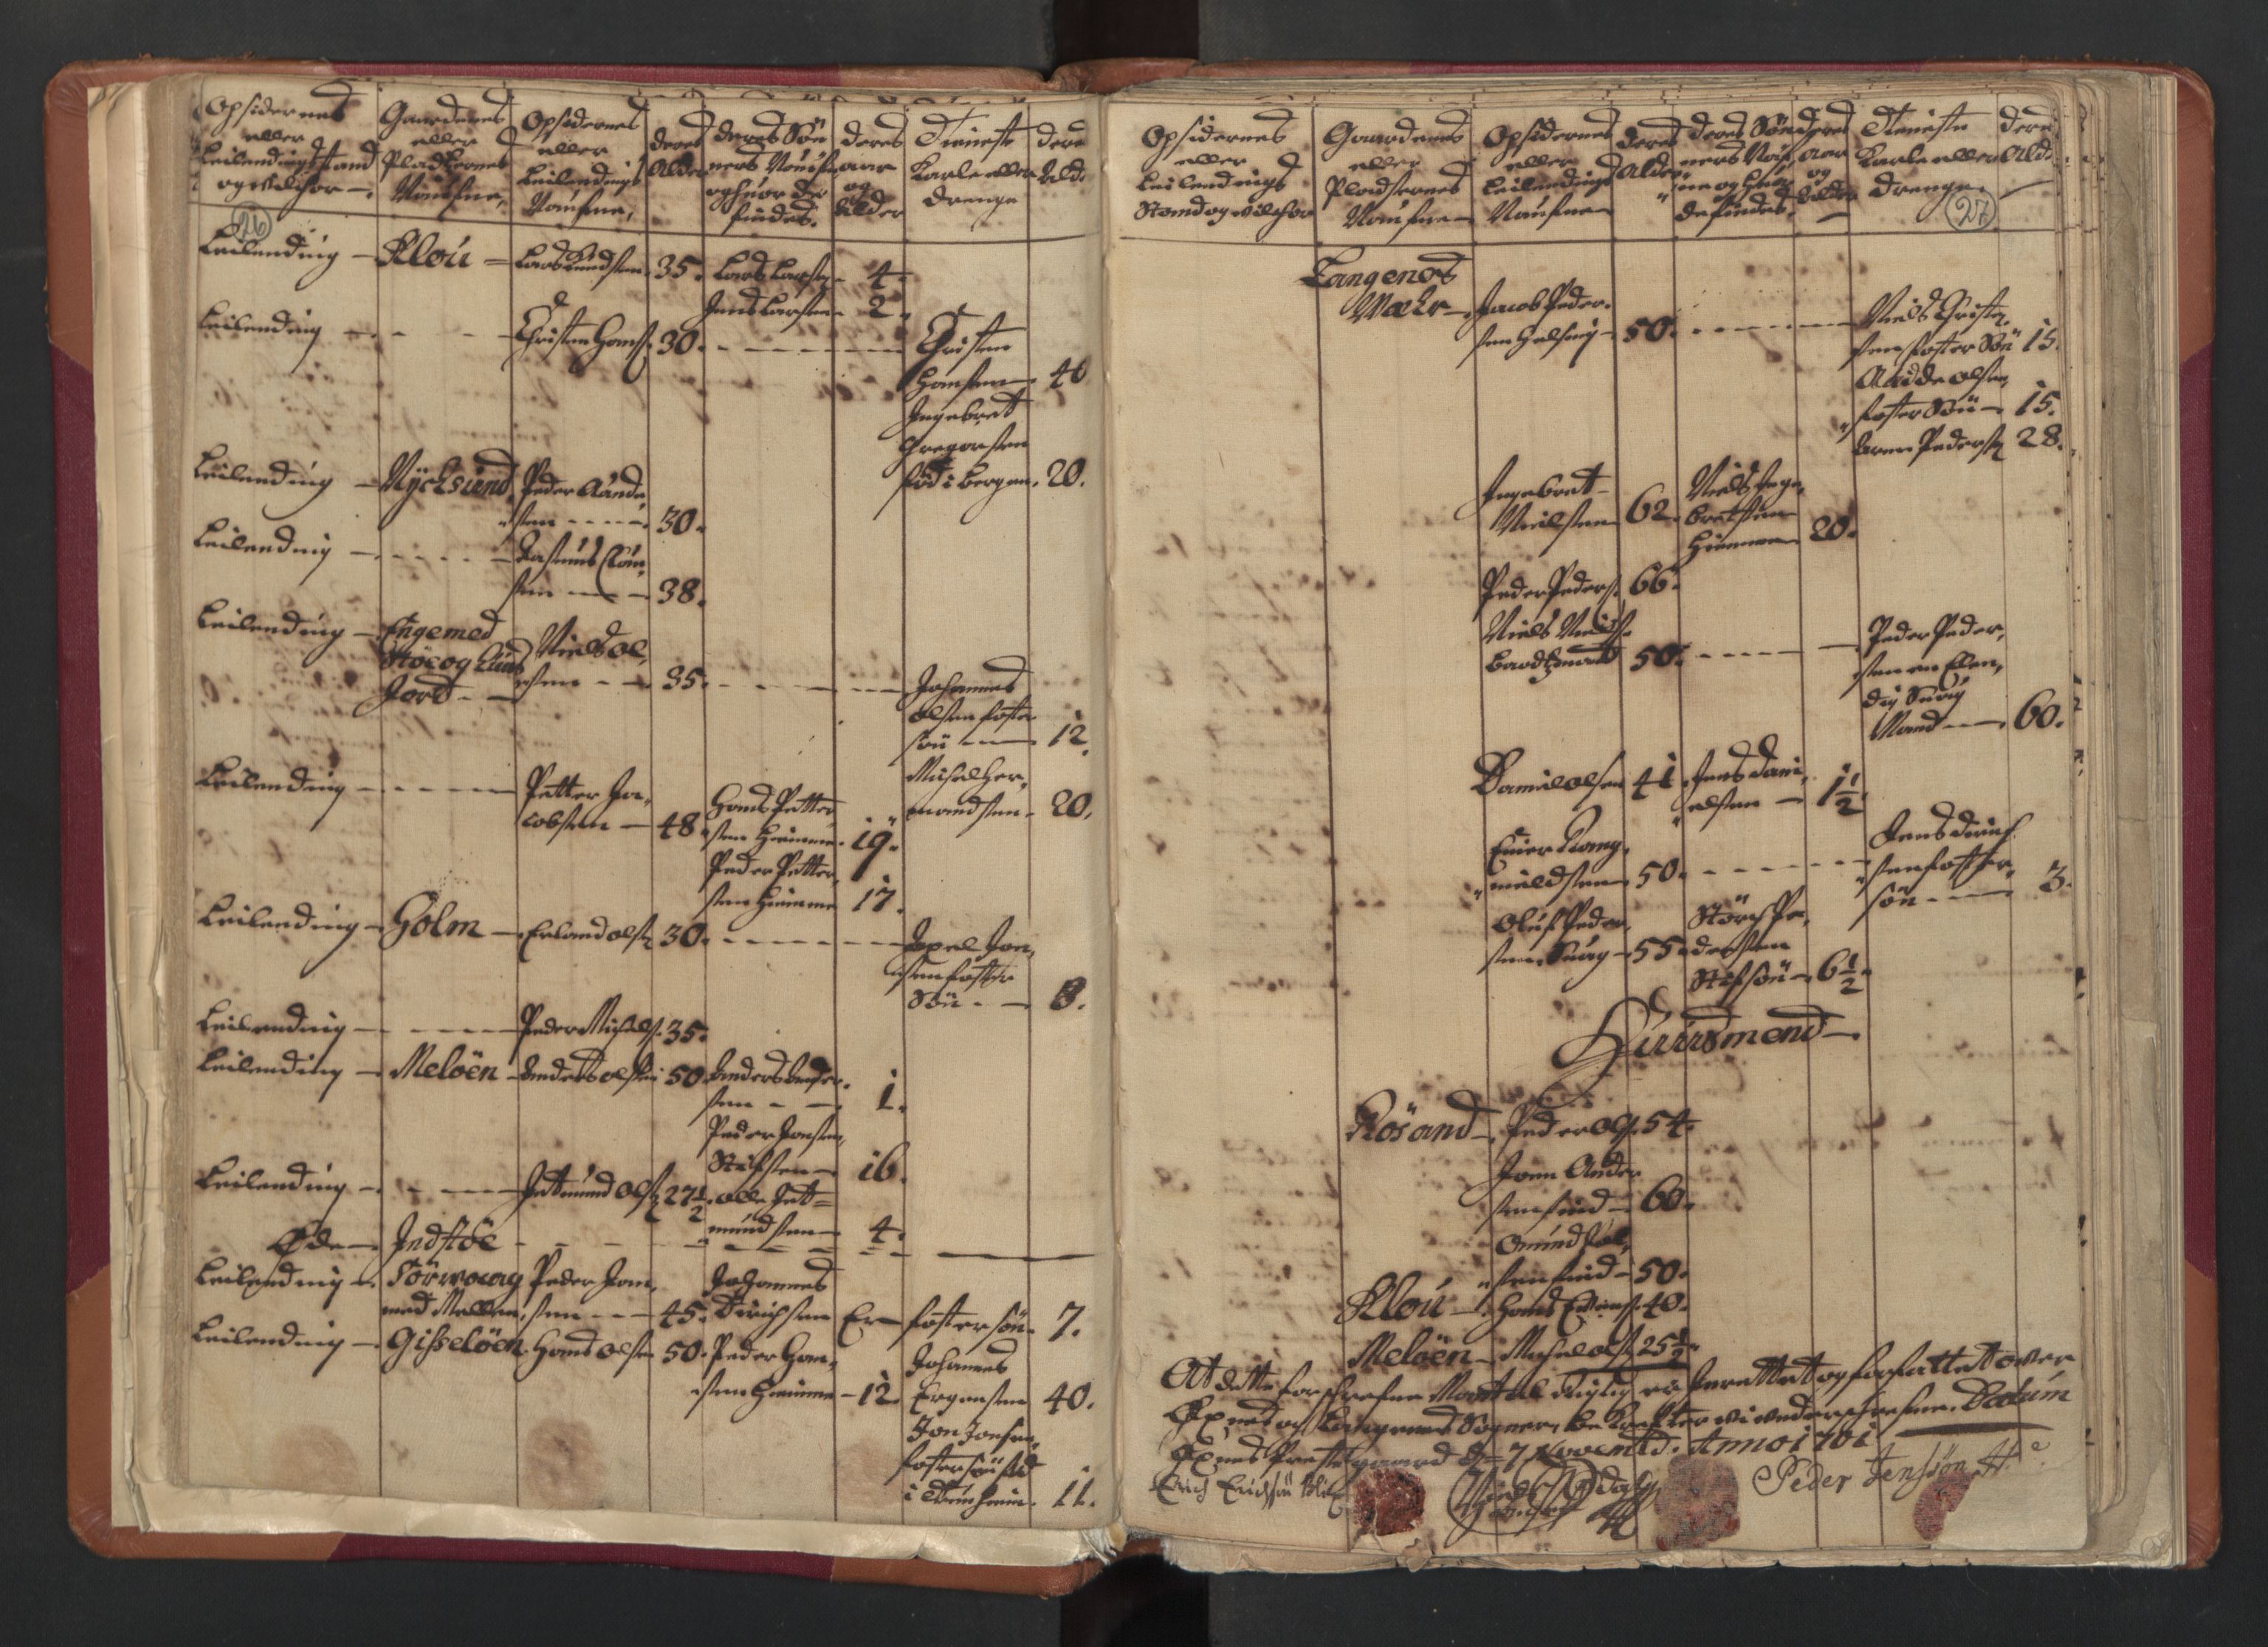 RA, Census (manntall) 1701, no. 18: Vesterålen, Andenes and Lofoten fogderi, 1701, p. 26-27